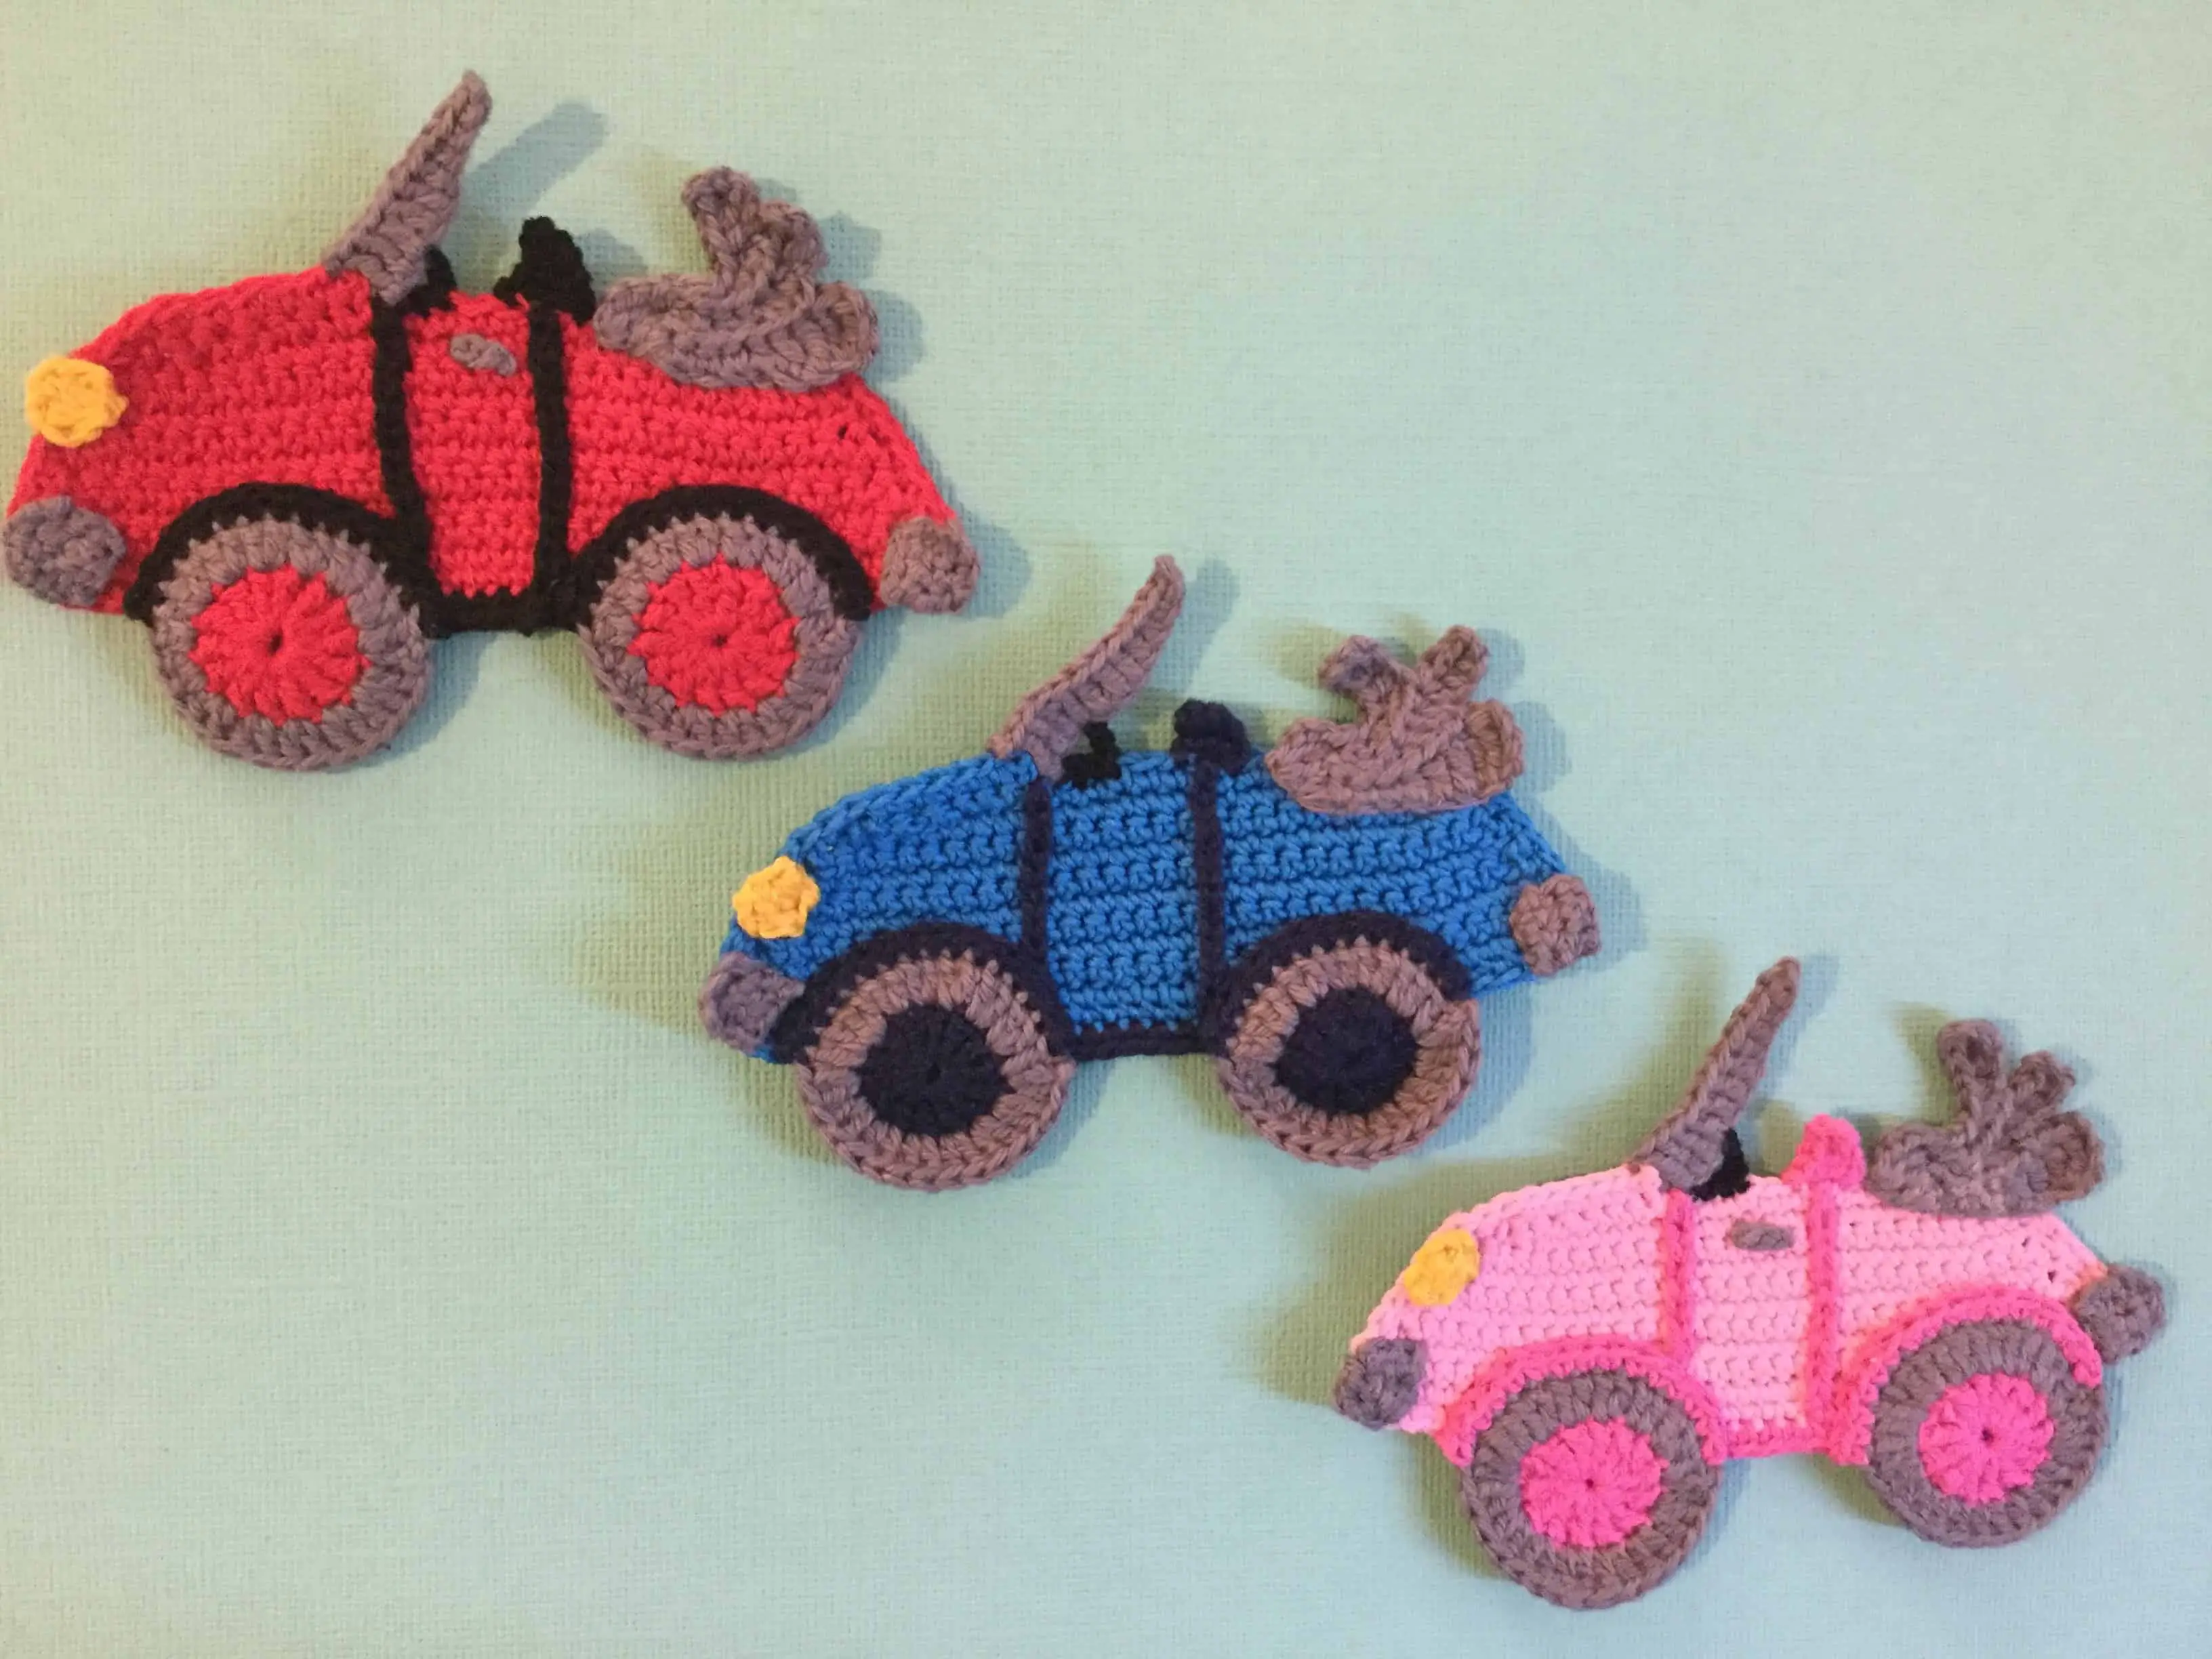 Convertible crochet car group landscape